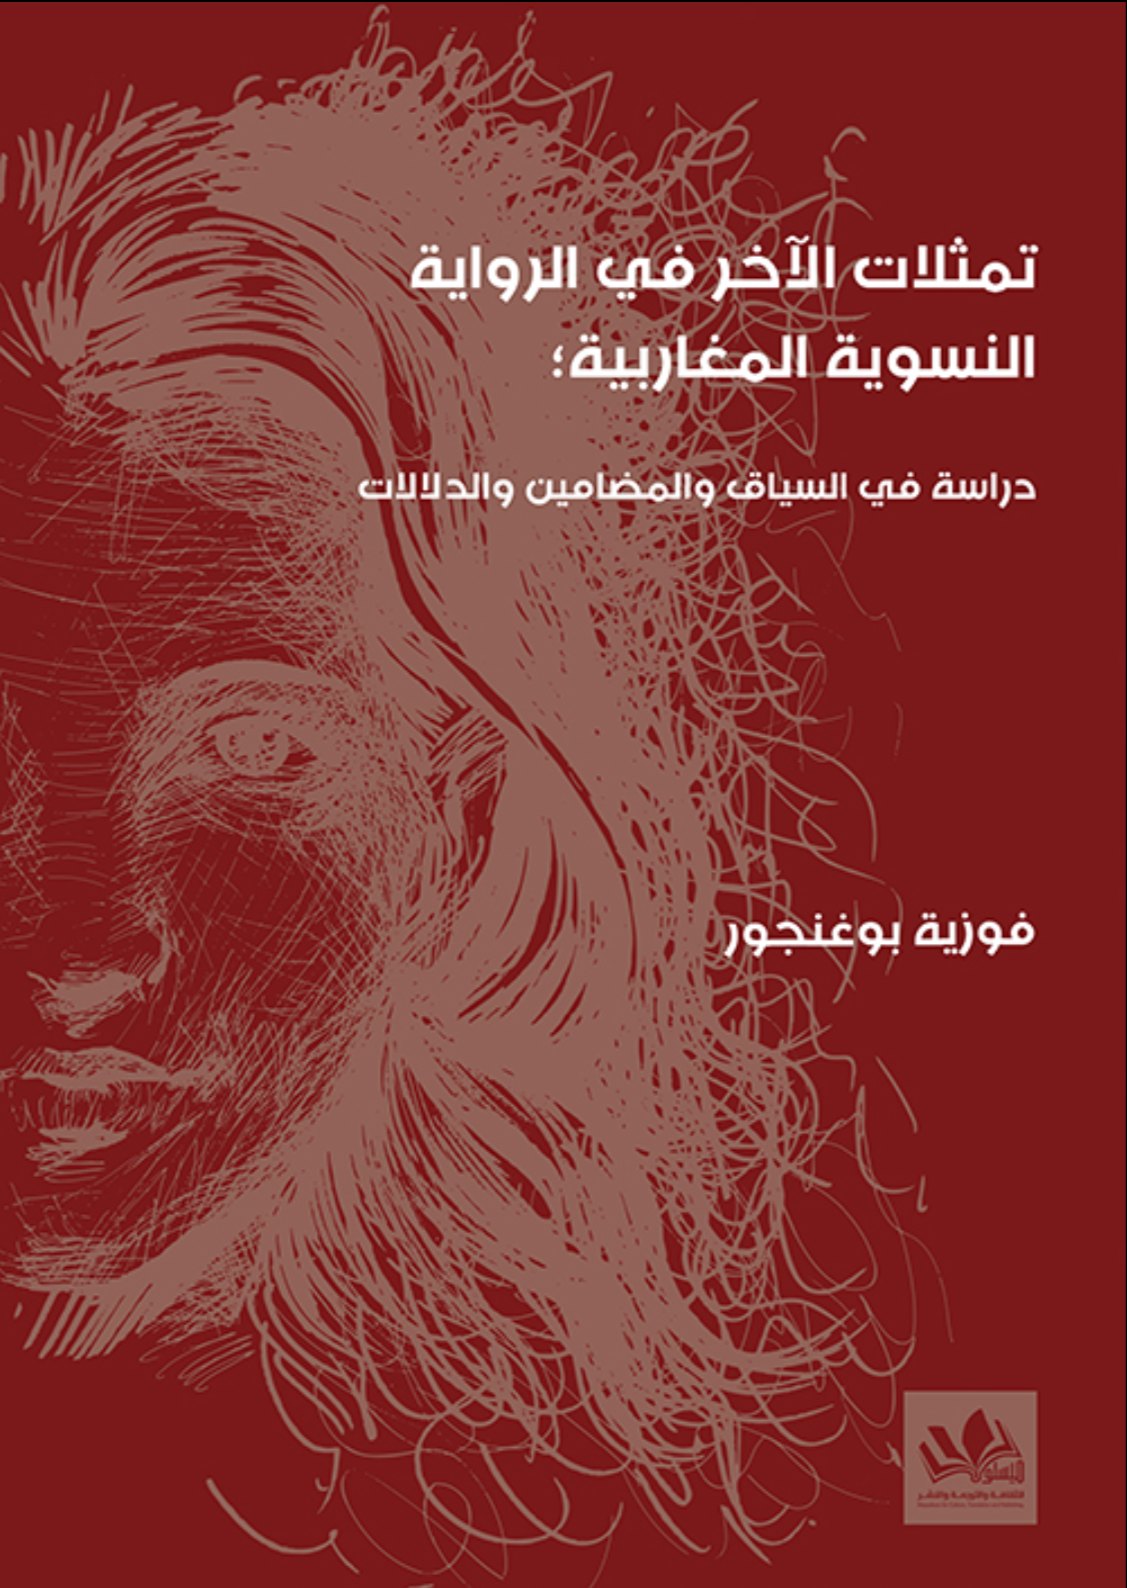 باقة من الإصدارات الأدبية لمؤسسة ميسلون للثقافة والترجمة والنشر